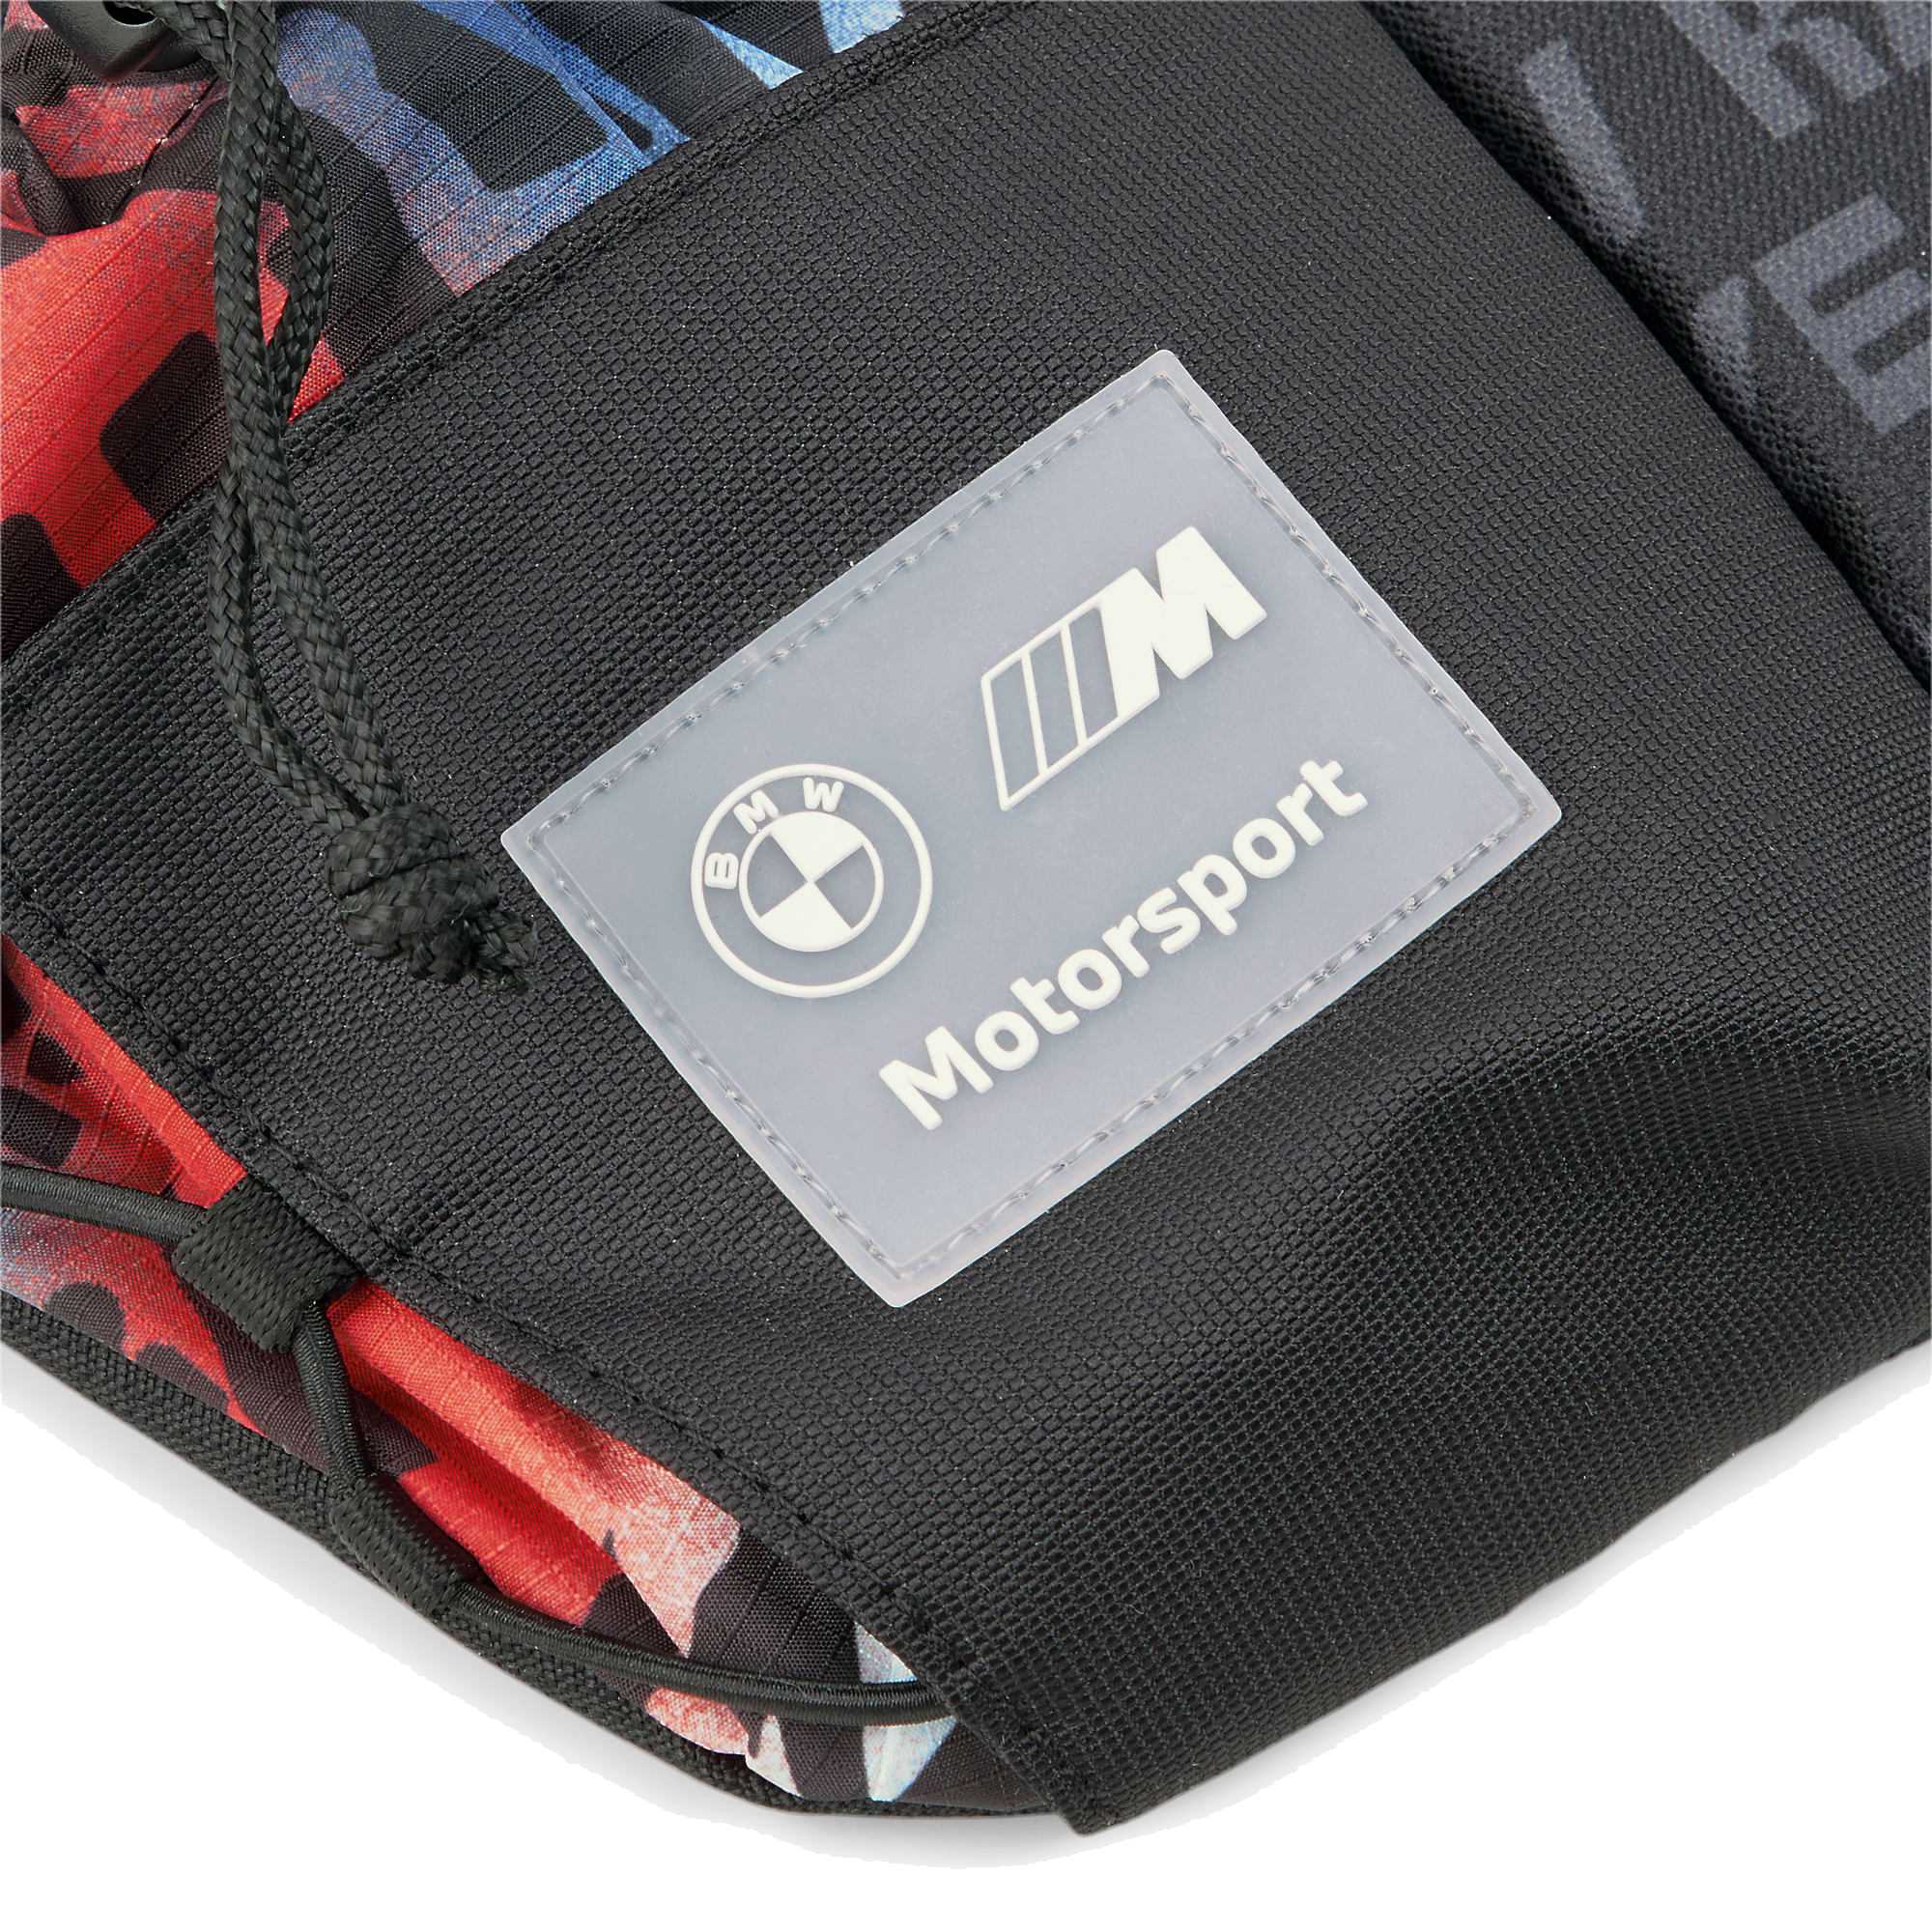 BMW Motorsport Puma Messenger Tasche "M Motorsport" - schwarz